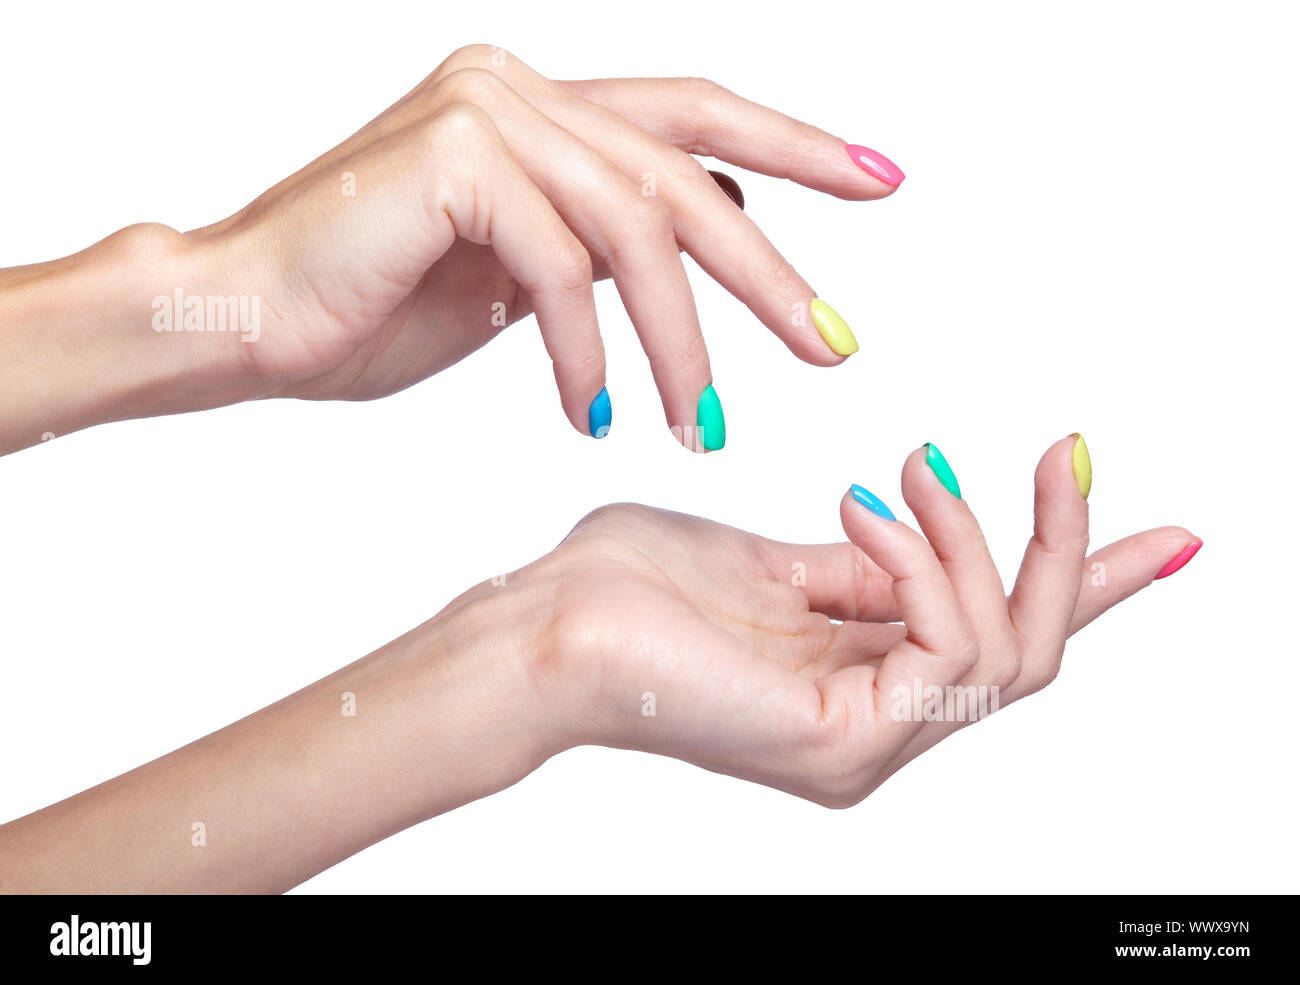 Les doigts avec des ongles manucure fantaisie isolé sur fond blanc Banque D'Images